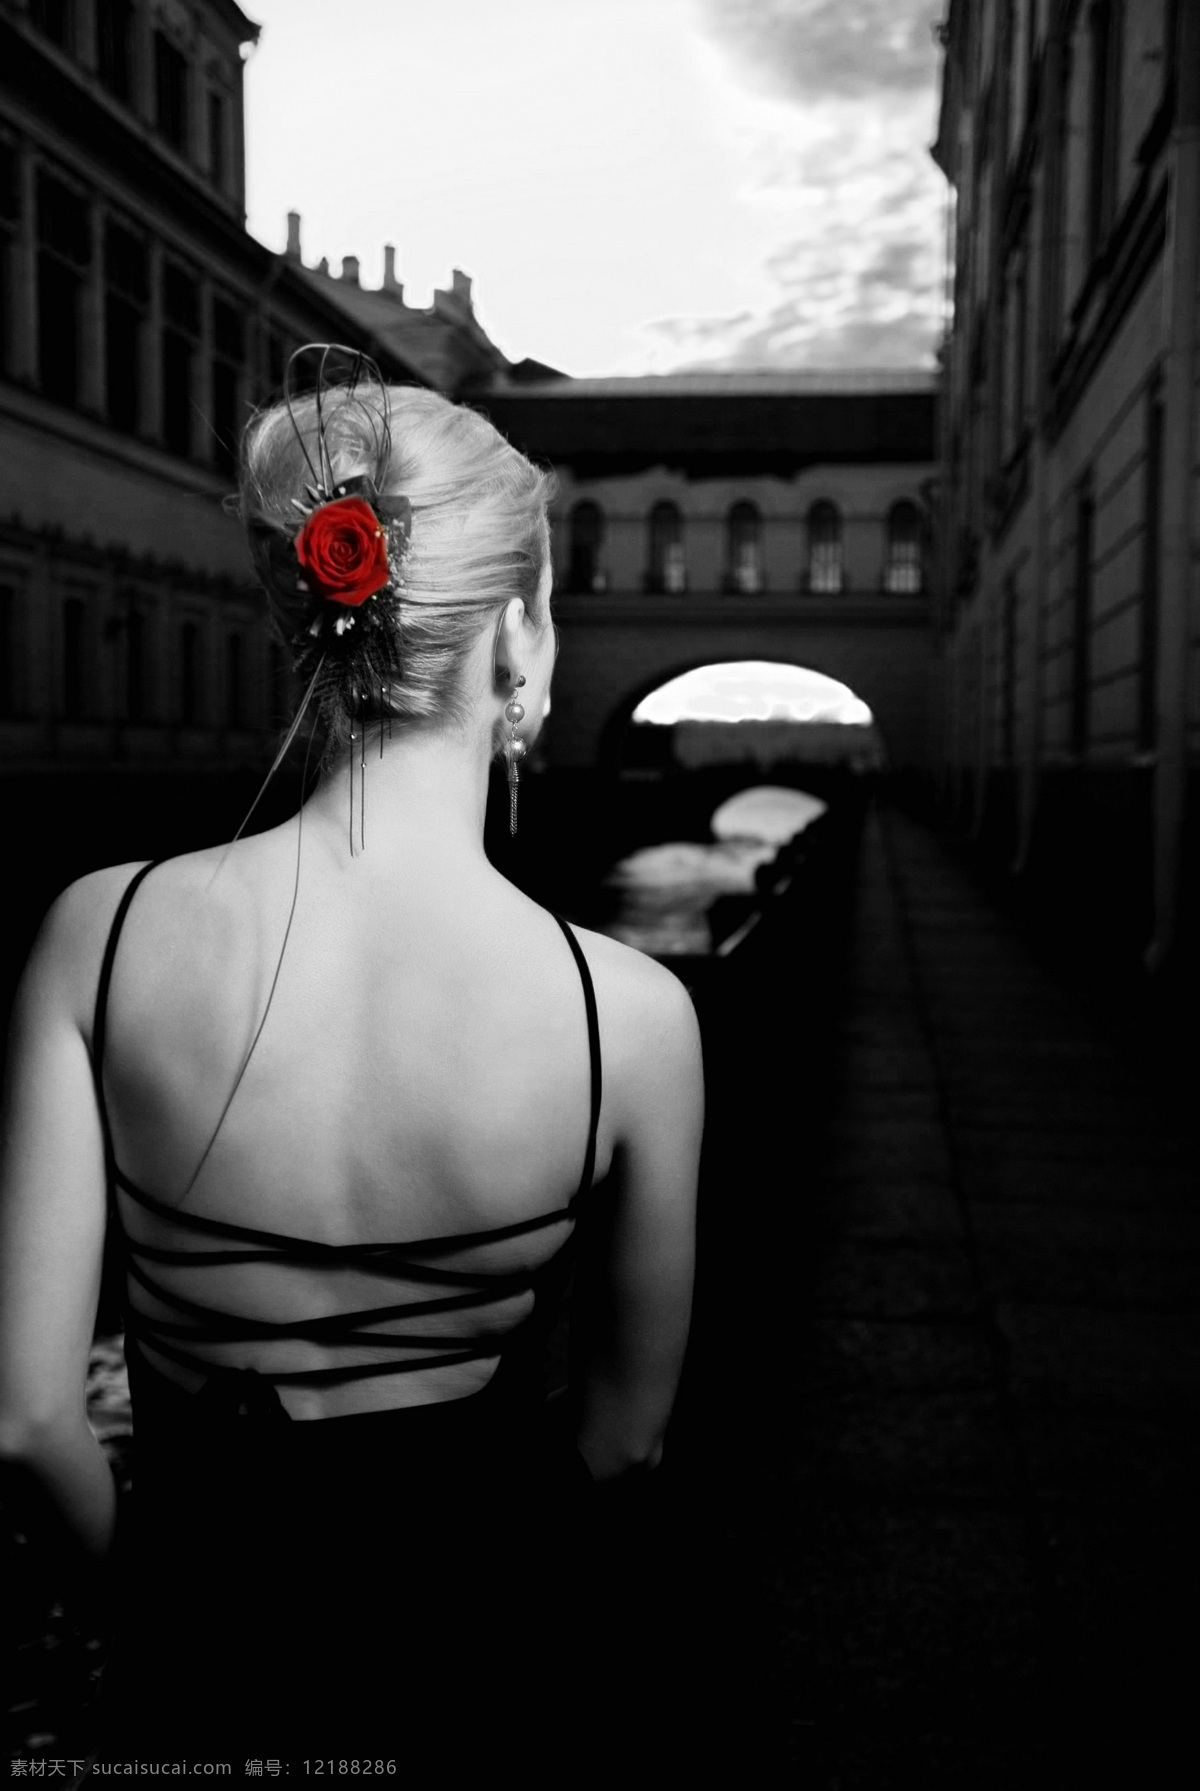 威尼斯玫瑰 威尼斯 美人 美女 女人 玫瑰 花朵 桥 水道 外国 风光 人物图库 人物摄影 摄影图库